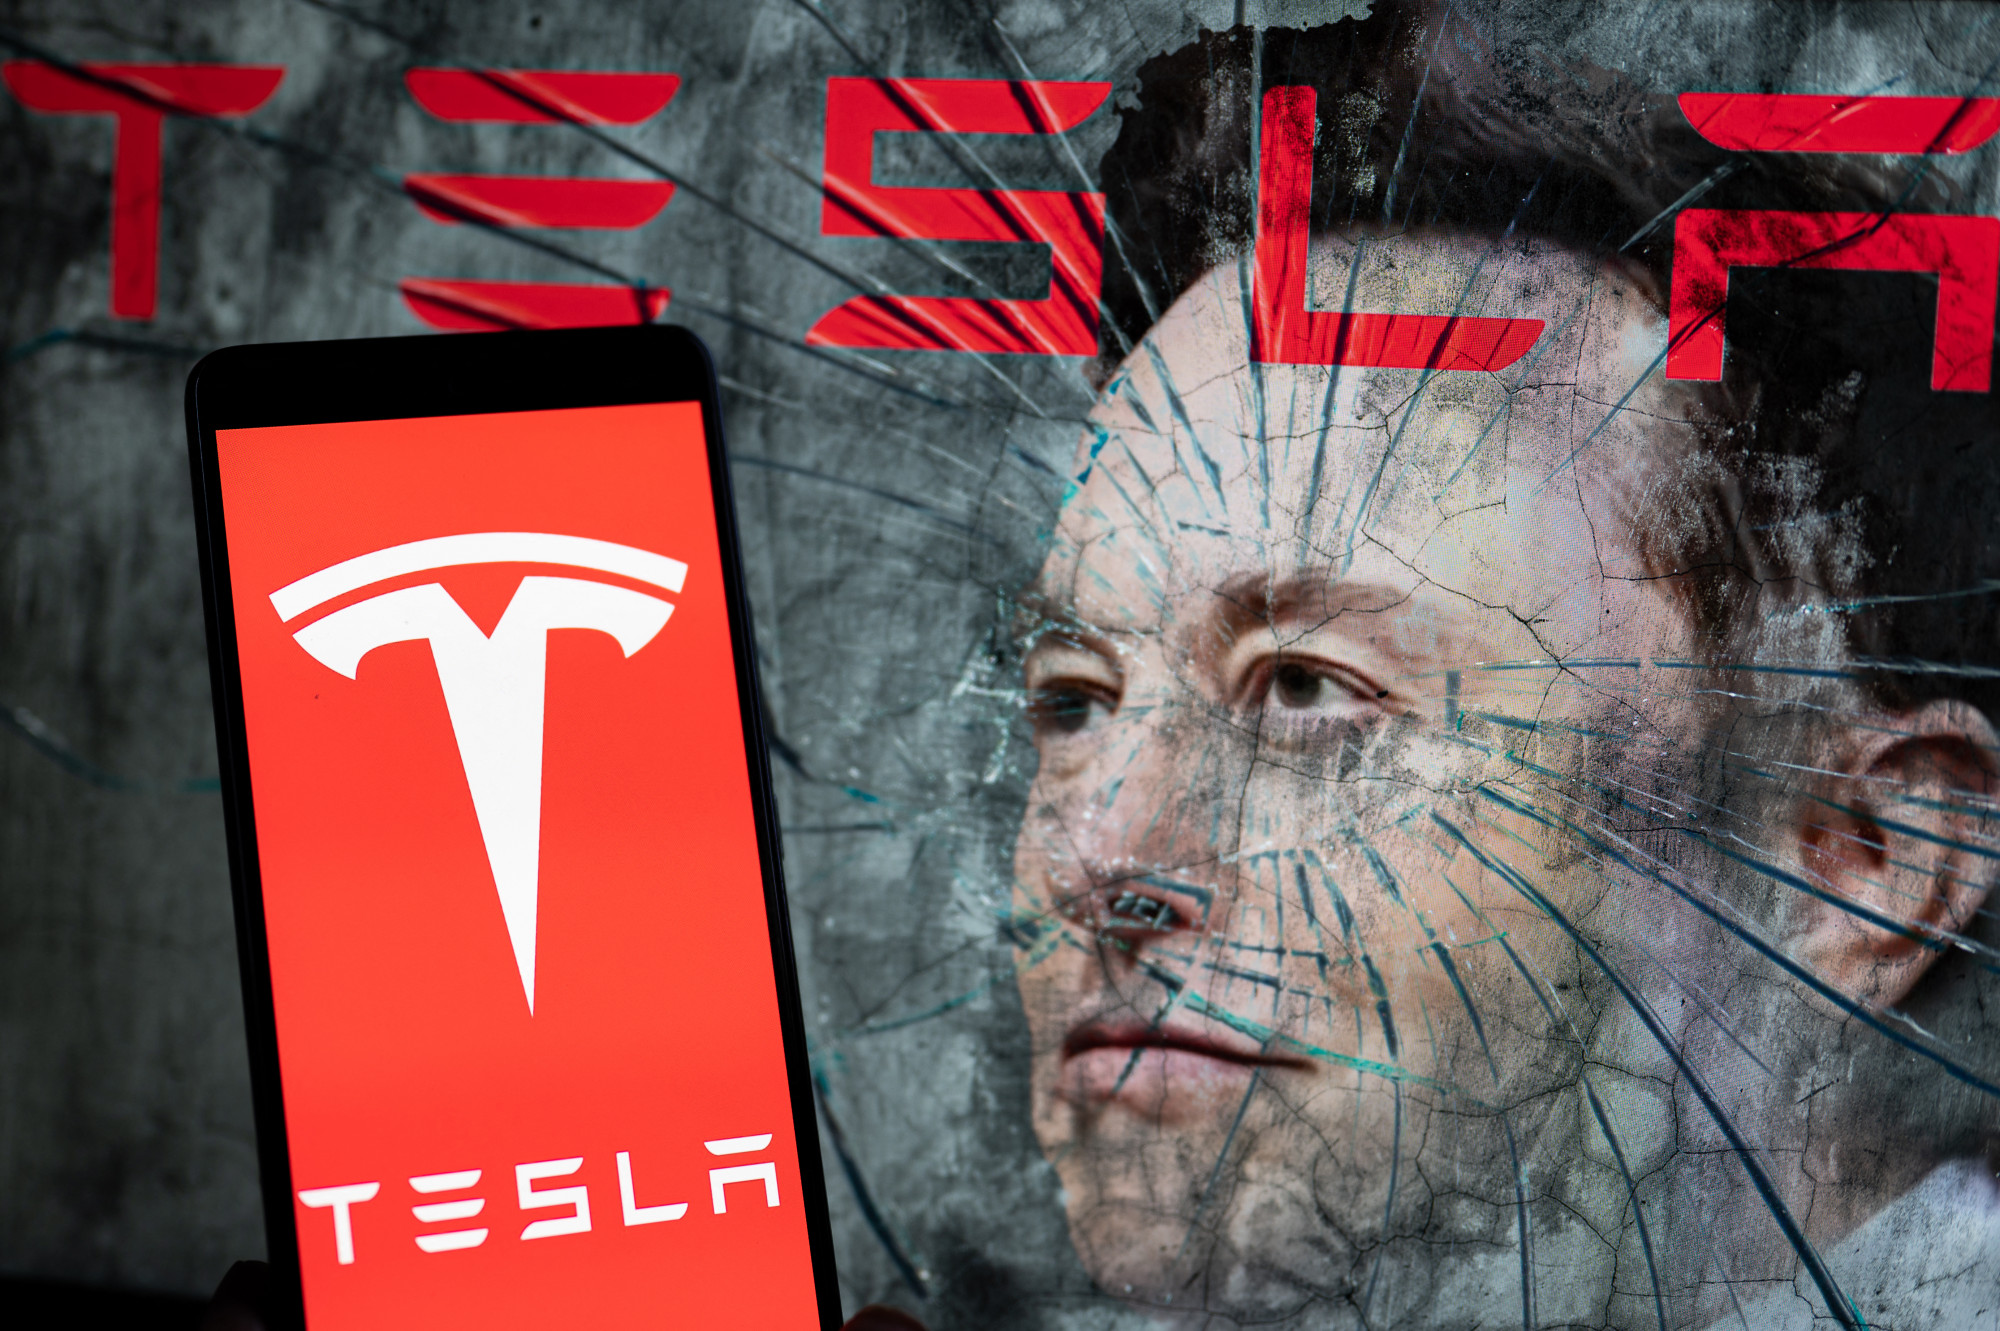 Egymás között osztogatták az ügyfelek privát felvételeit a Tesla dolgozói